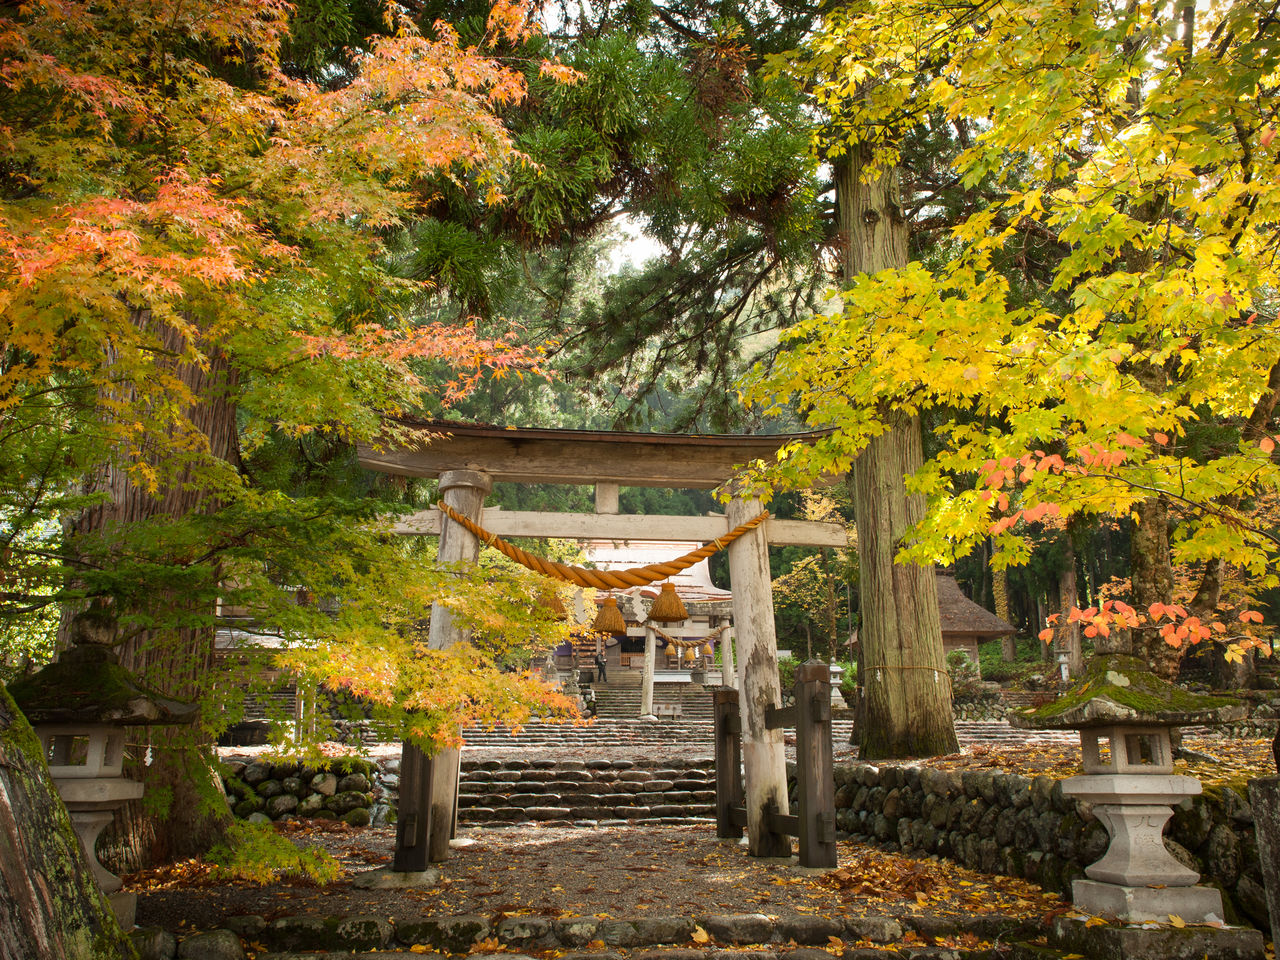 معبد شيراكاوا هاتشيمان الذي يعبد فيه ”أوجيغامي“ – الروح الحامية للمنطقة – محاط ببيئة غنية باللونين الذهبي والقرمزي.